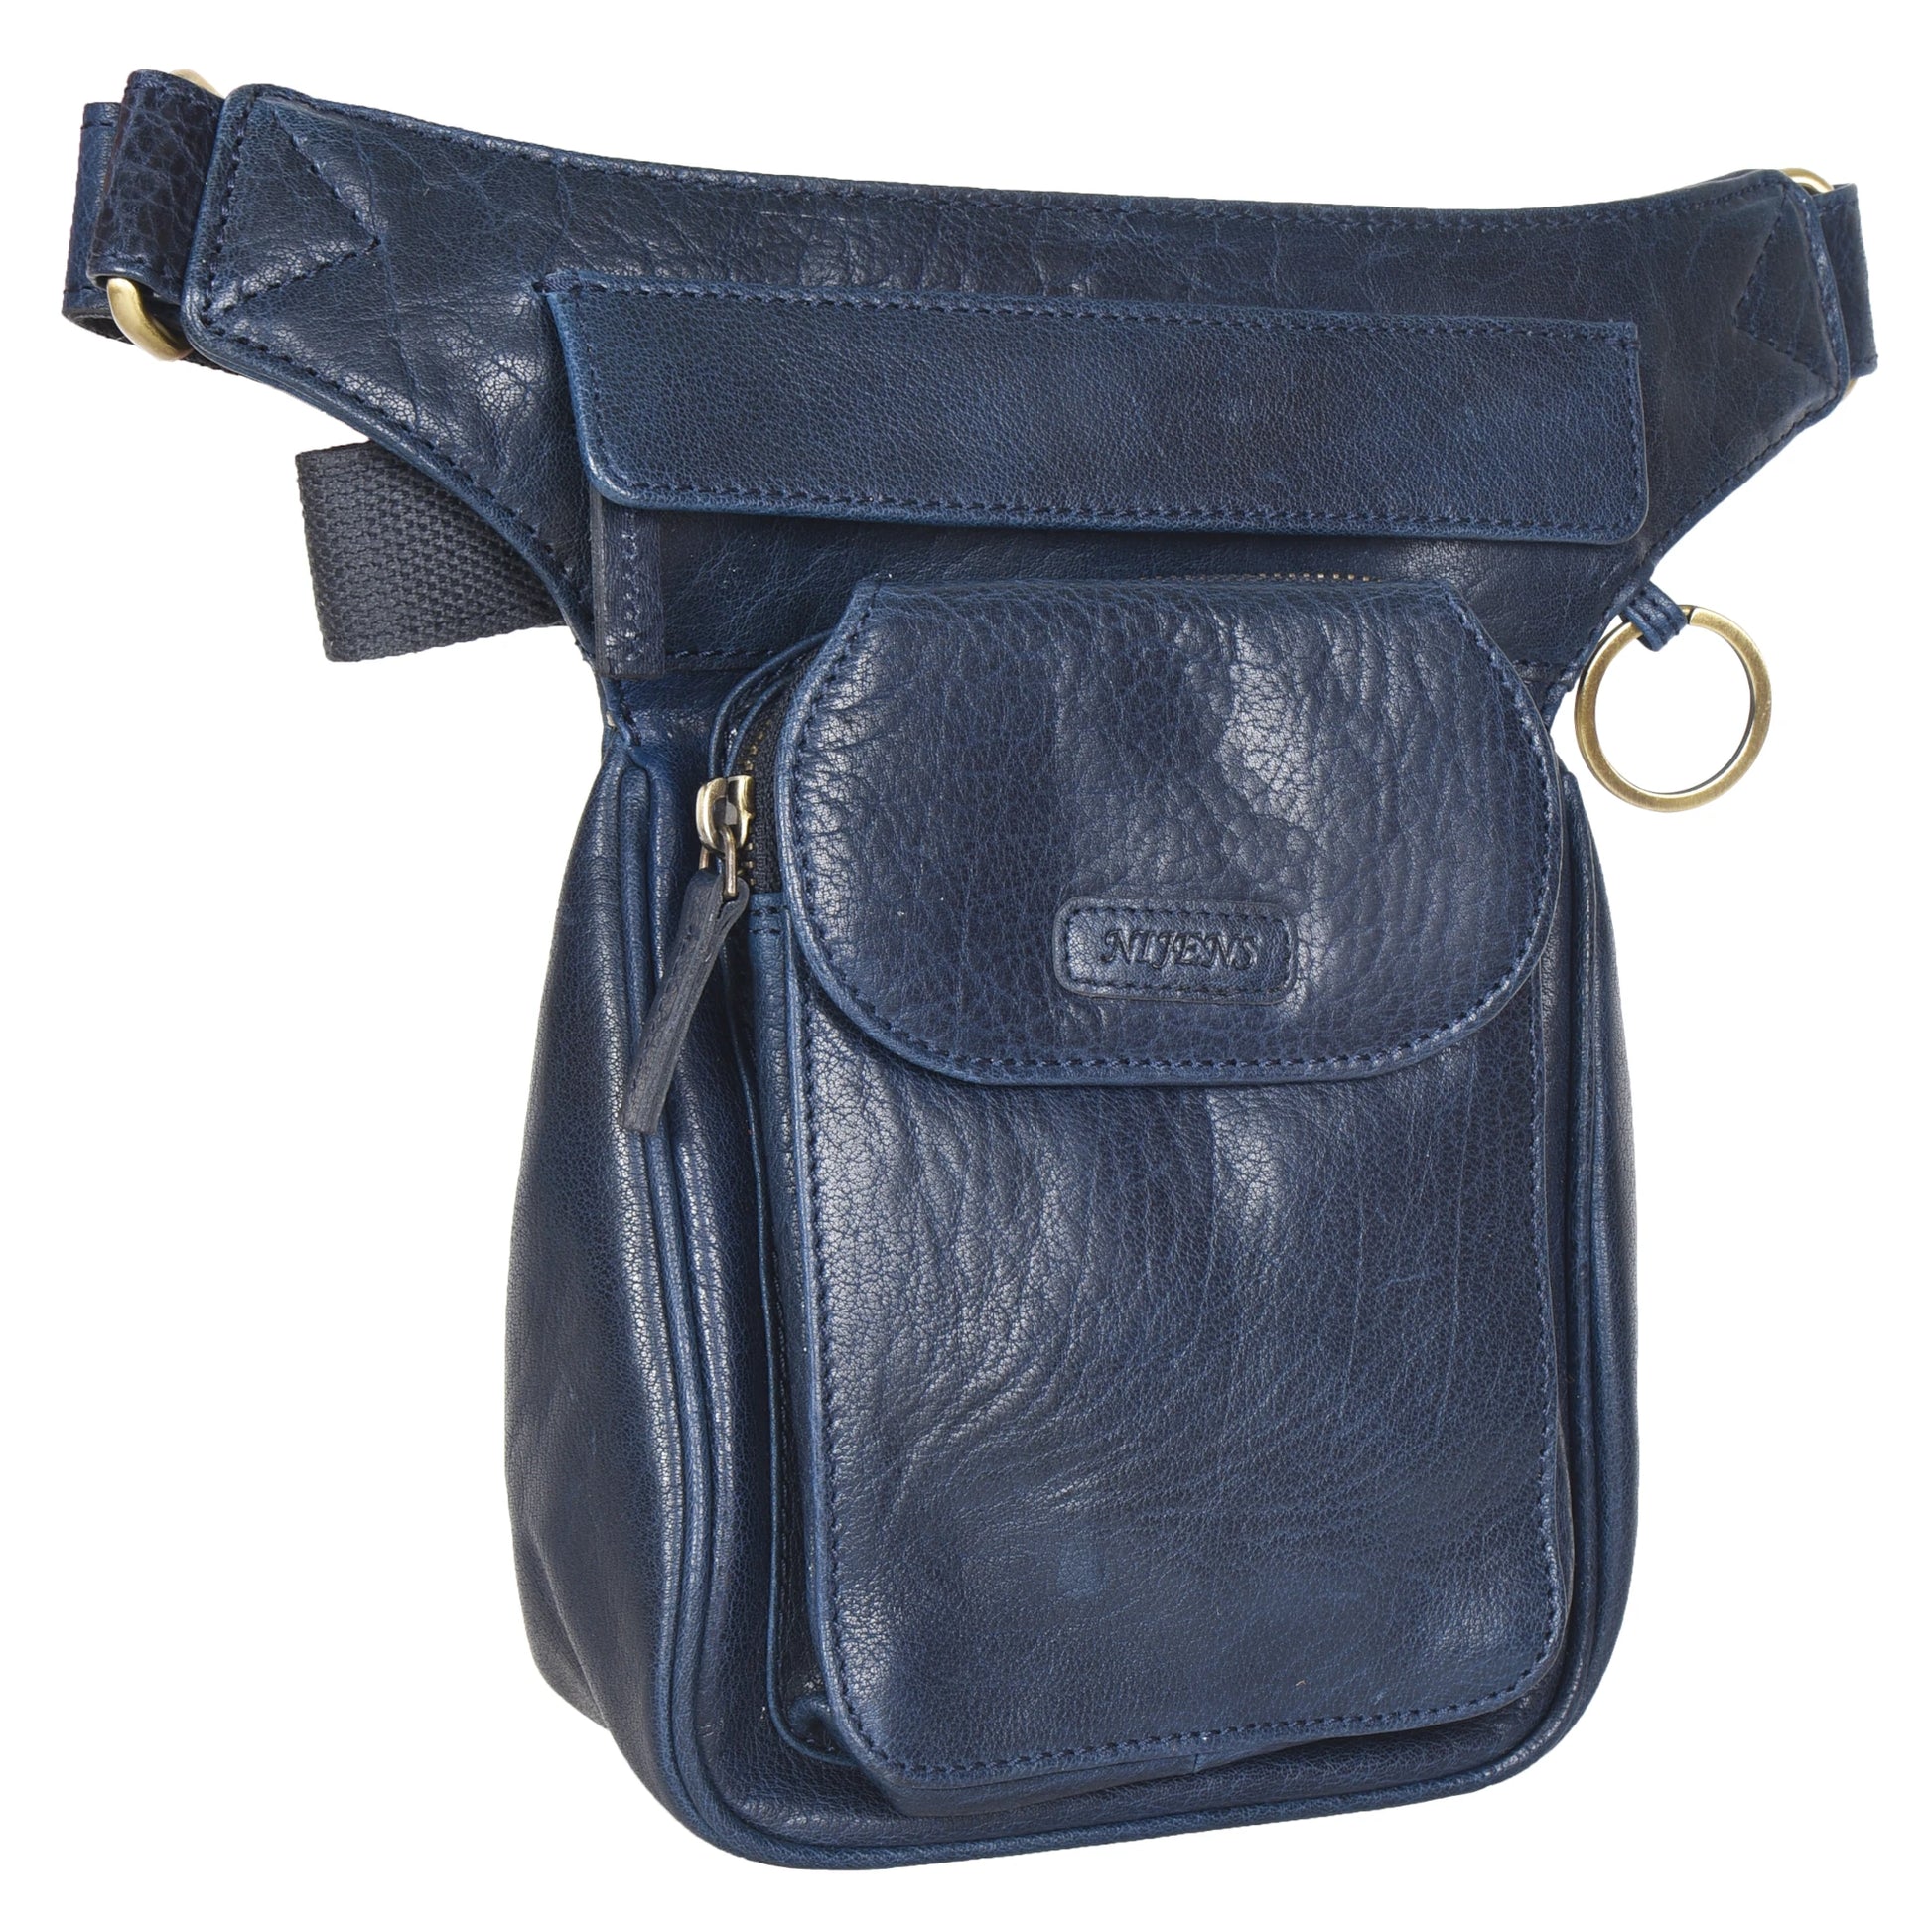 Gassi-Tasche, Gürteltasche Leder Navy Blau, mit einem Ring zum Befestigen von kleinen Sachen. Diese Tasche besitzt zwei Reißverschlussfächer und ein Einsteckfach vorne, welches durch einen Überschlag mit Druckknopf verschließbar ist.